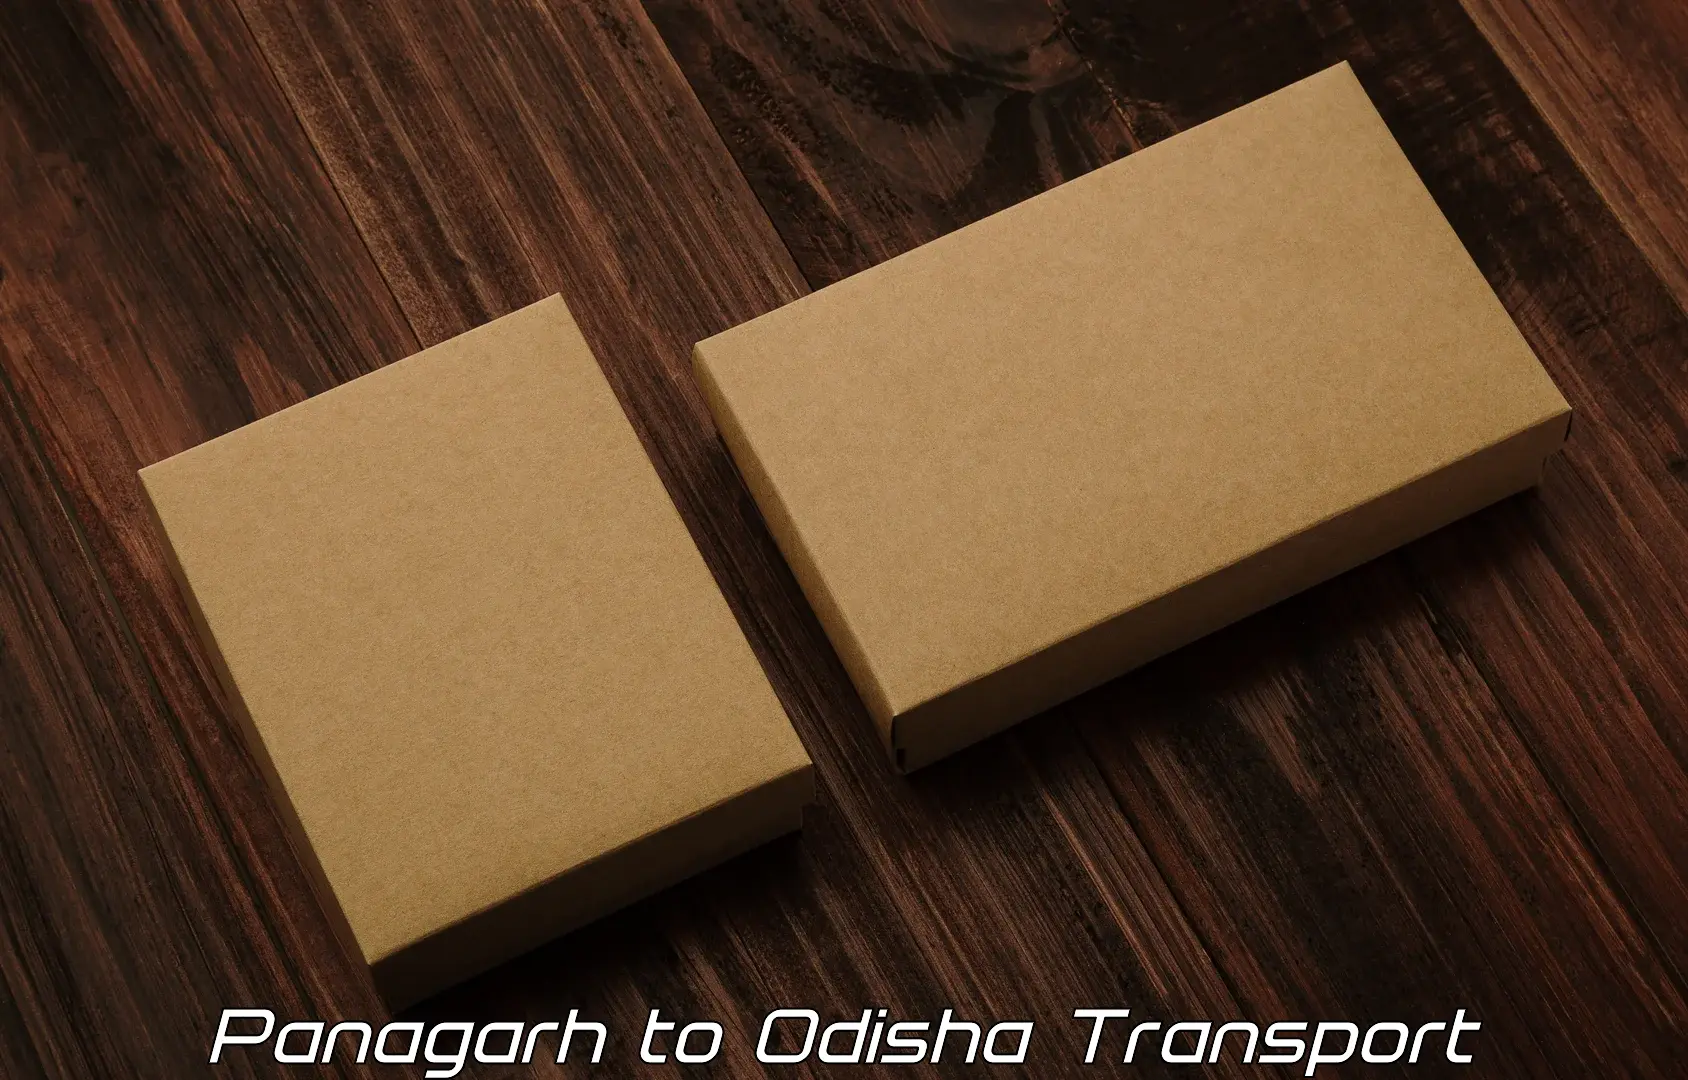 Road transport online services Panagarh to Rourkela